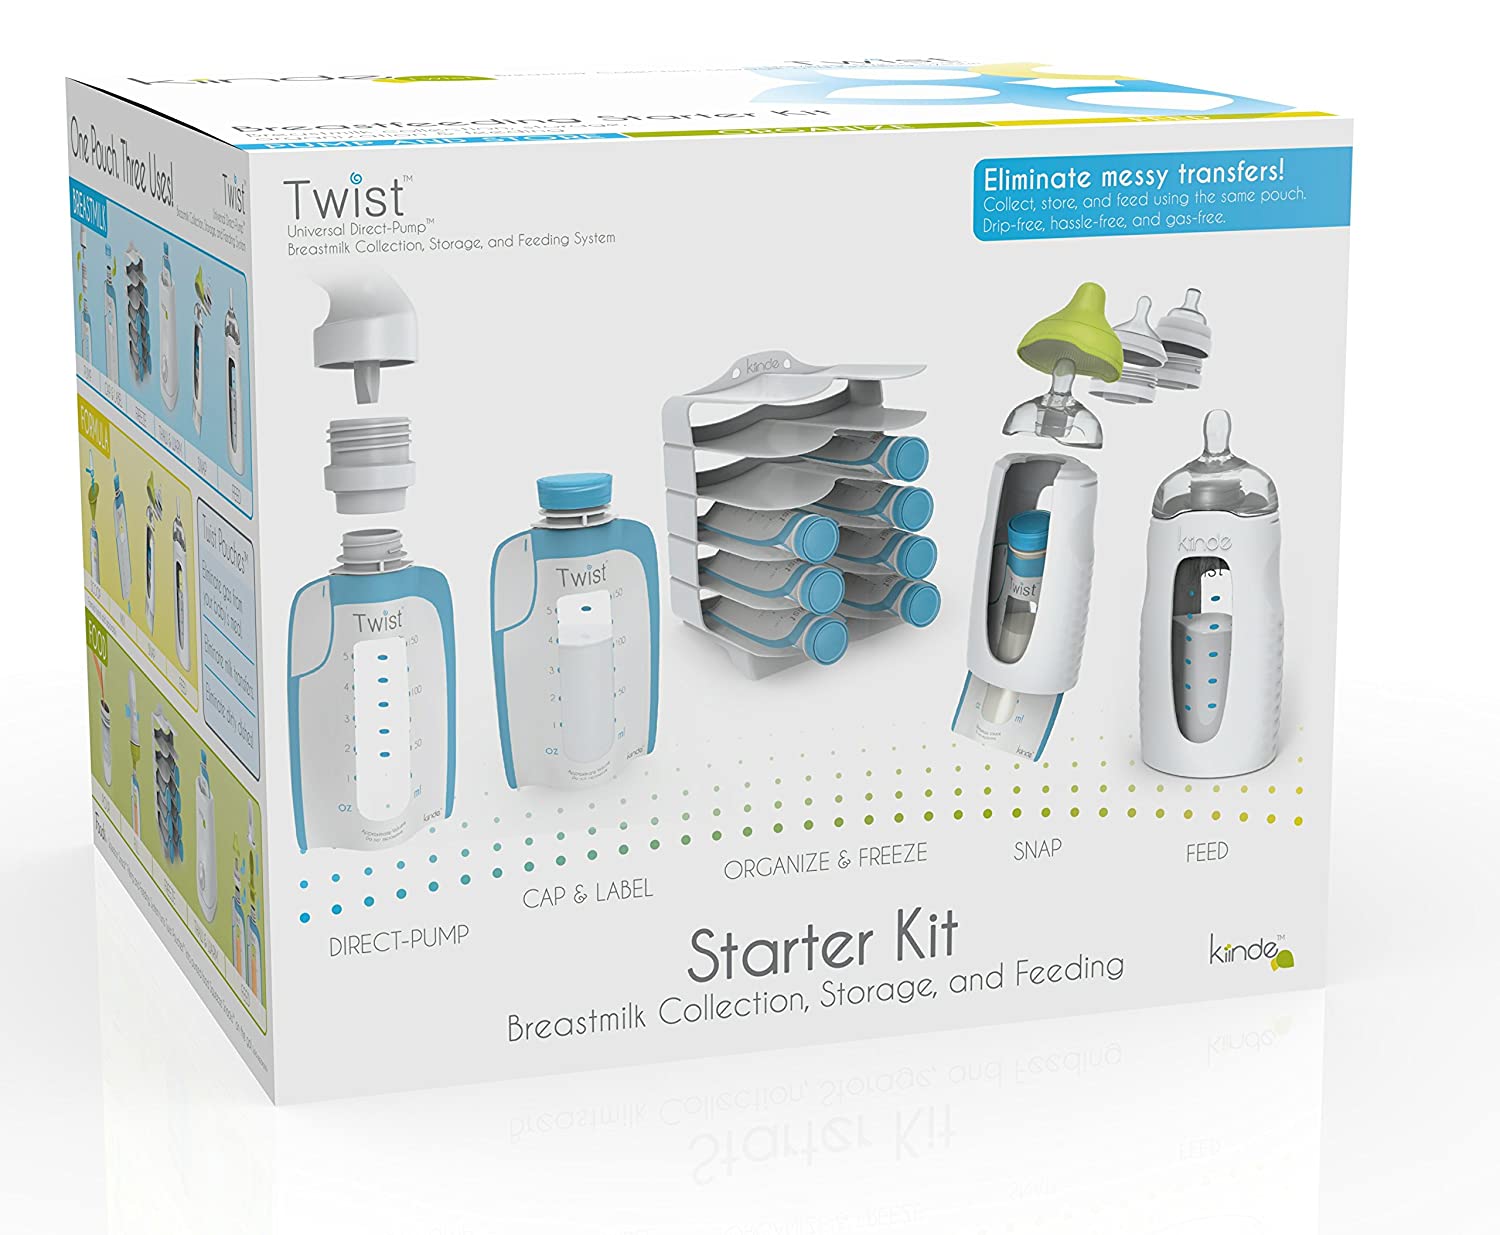 Kiinde Twist Breastfeeding Starter Kit